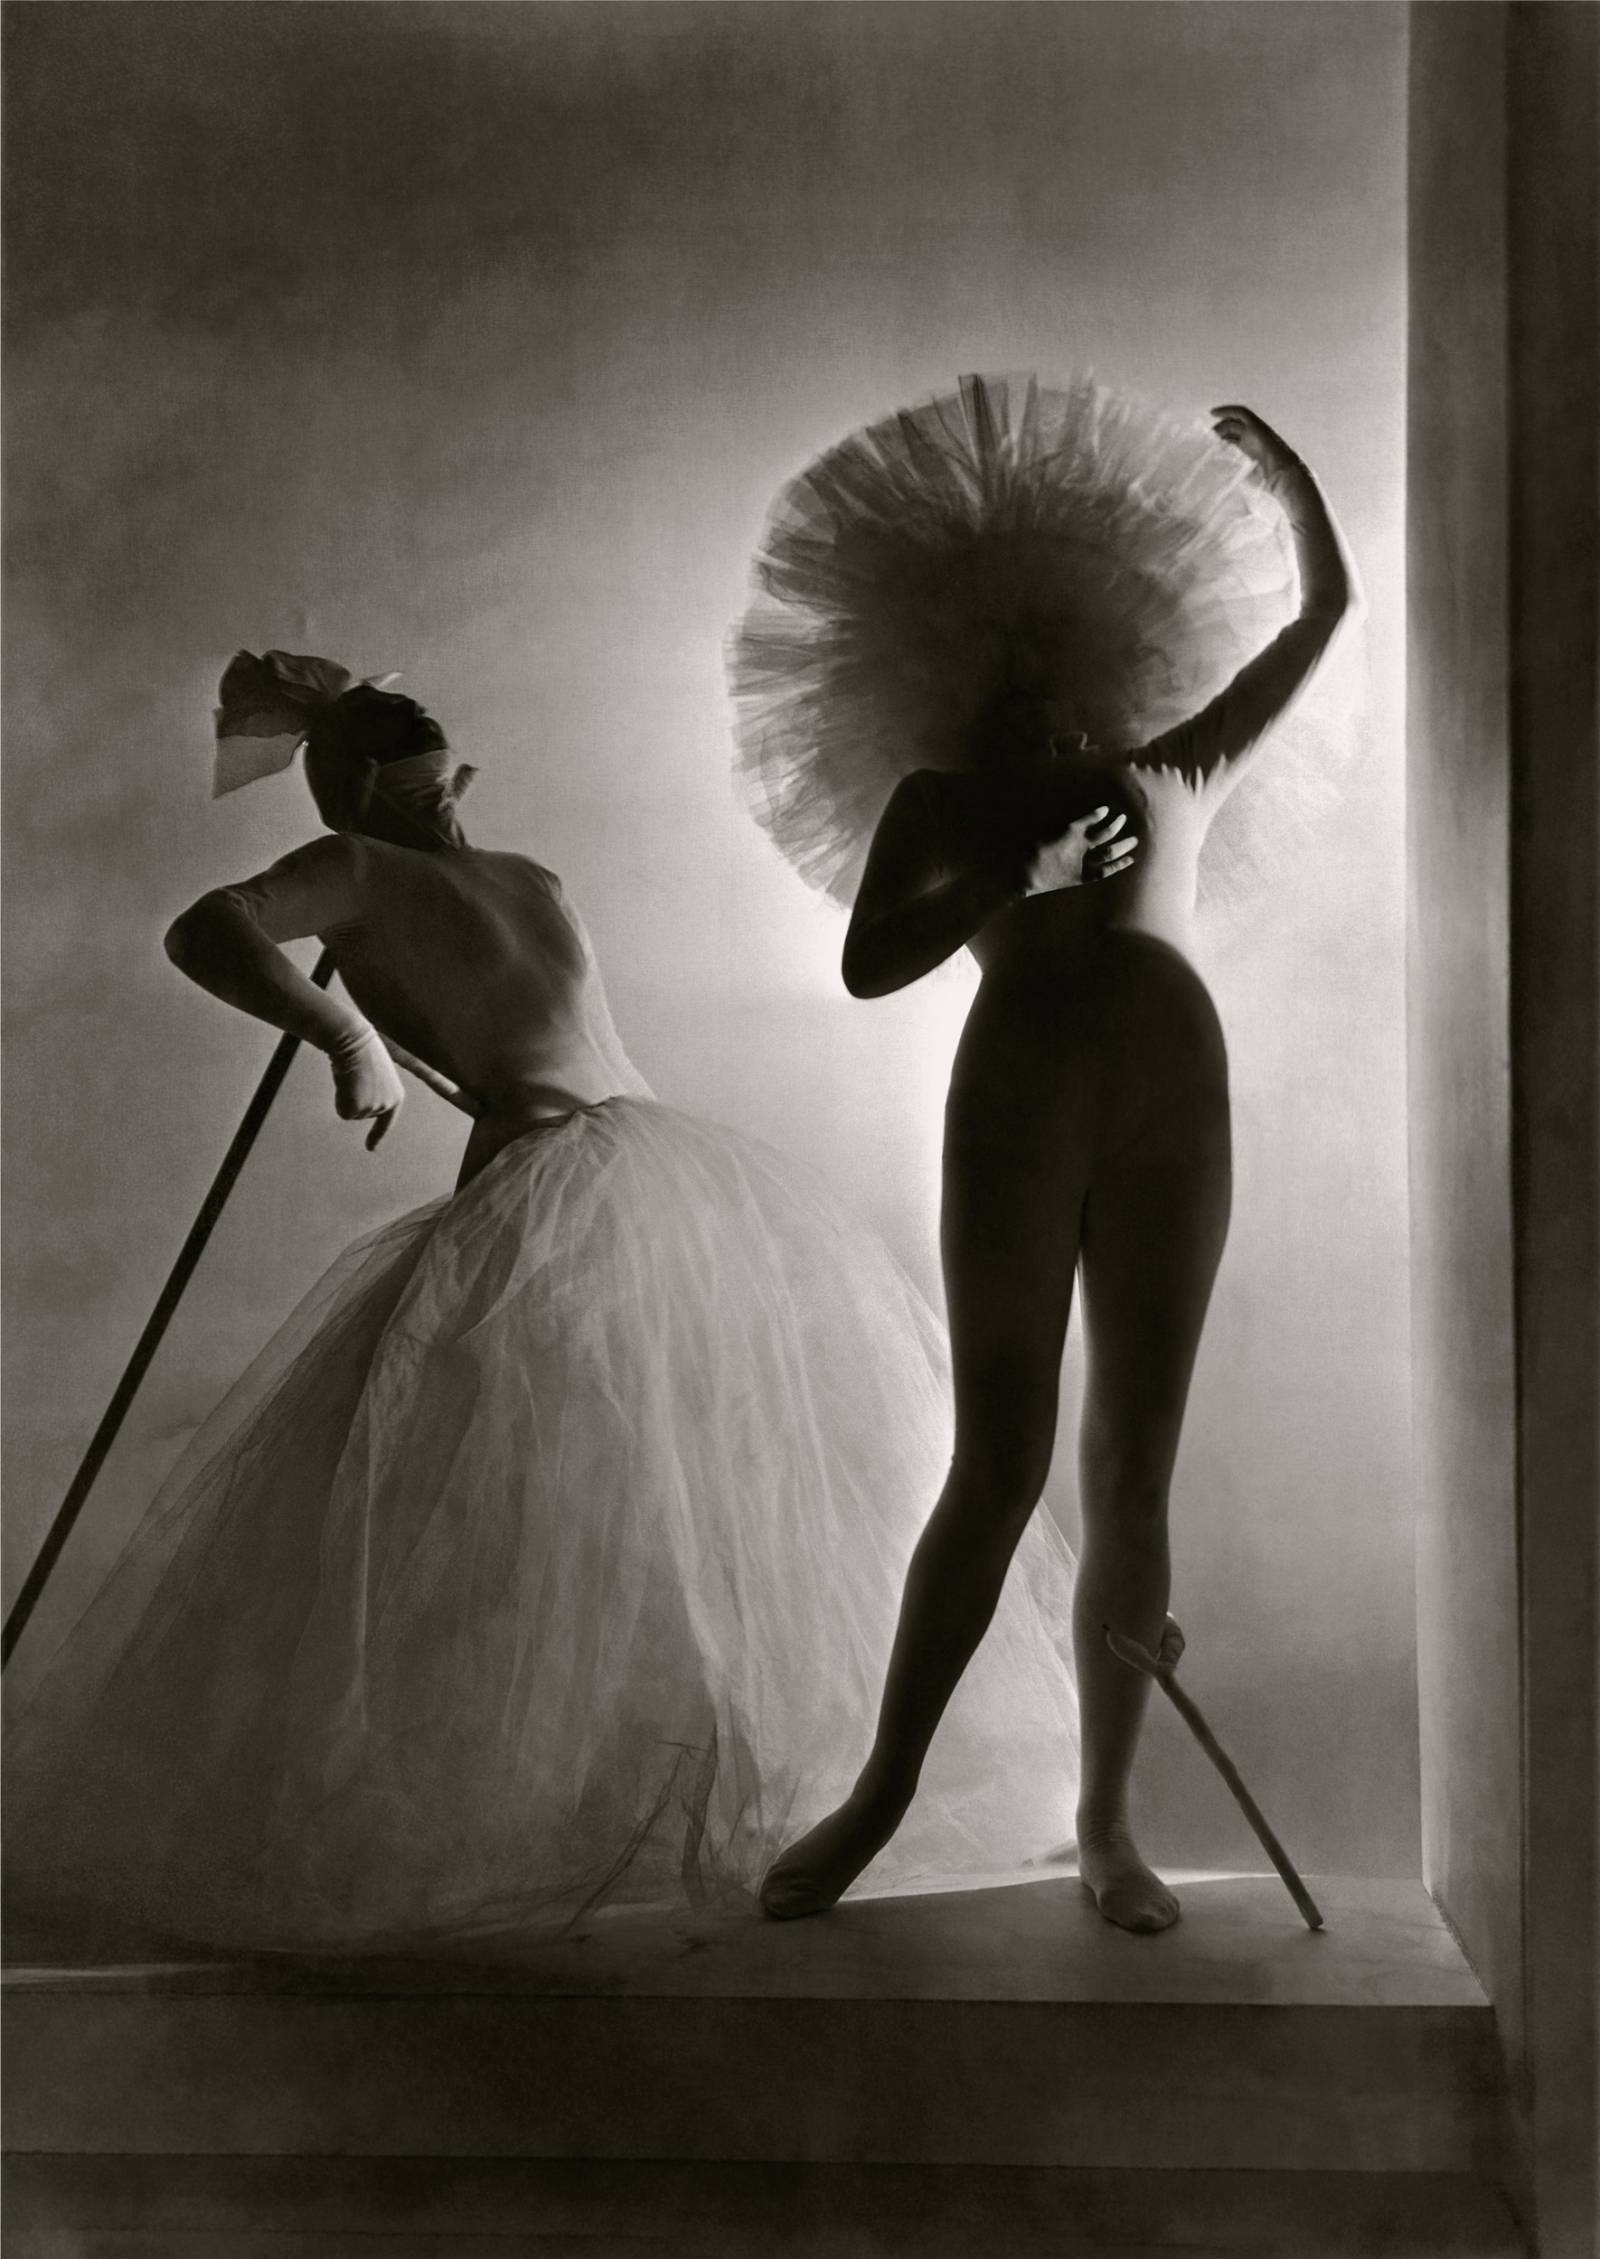 Kostiumy Salvadora Dalego stworzone na potrzeby sztuki baletowej Leonida Massine'a, 1939